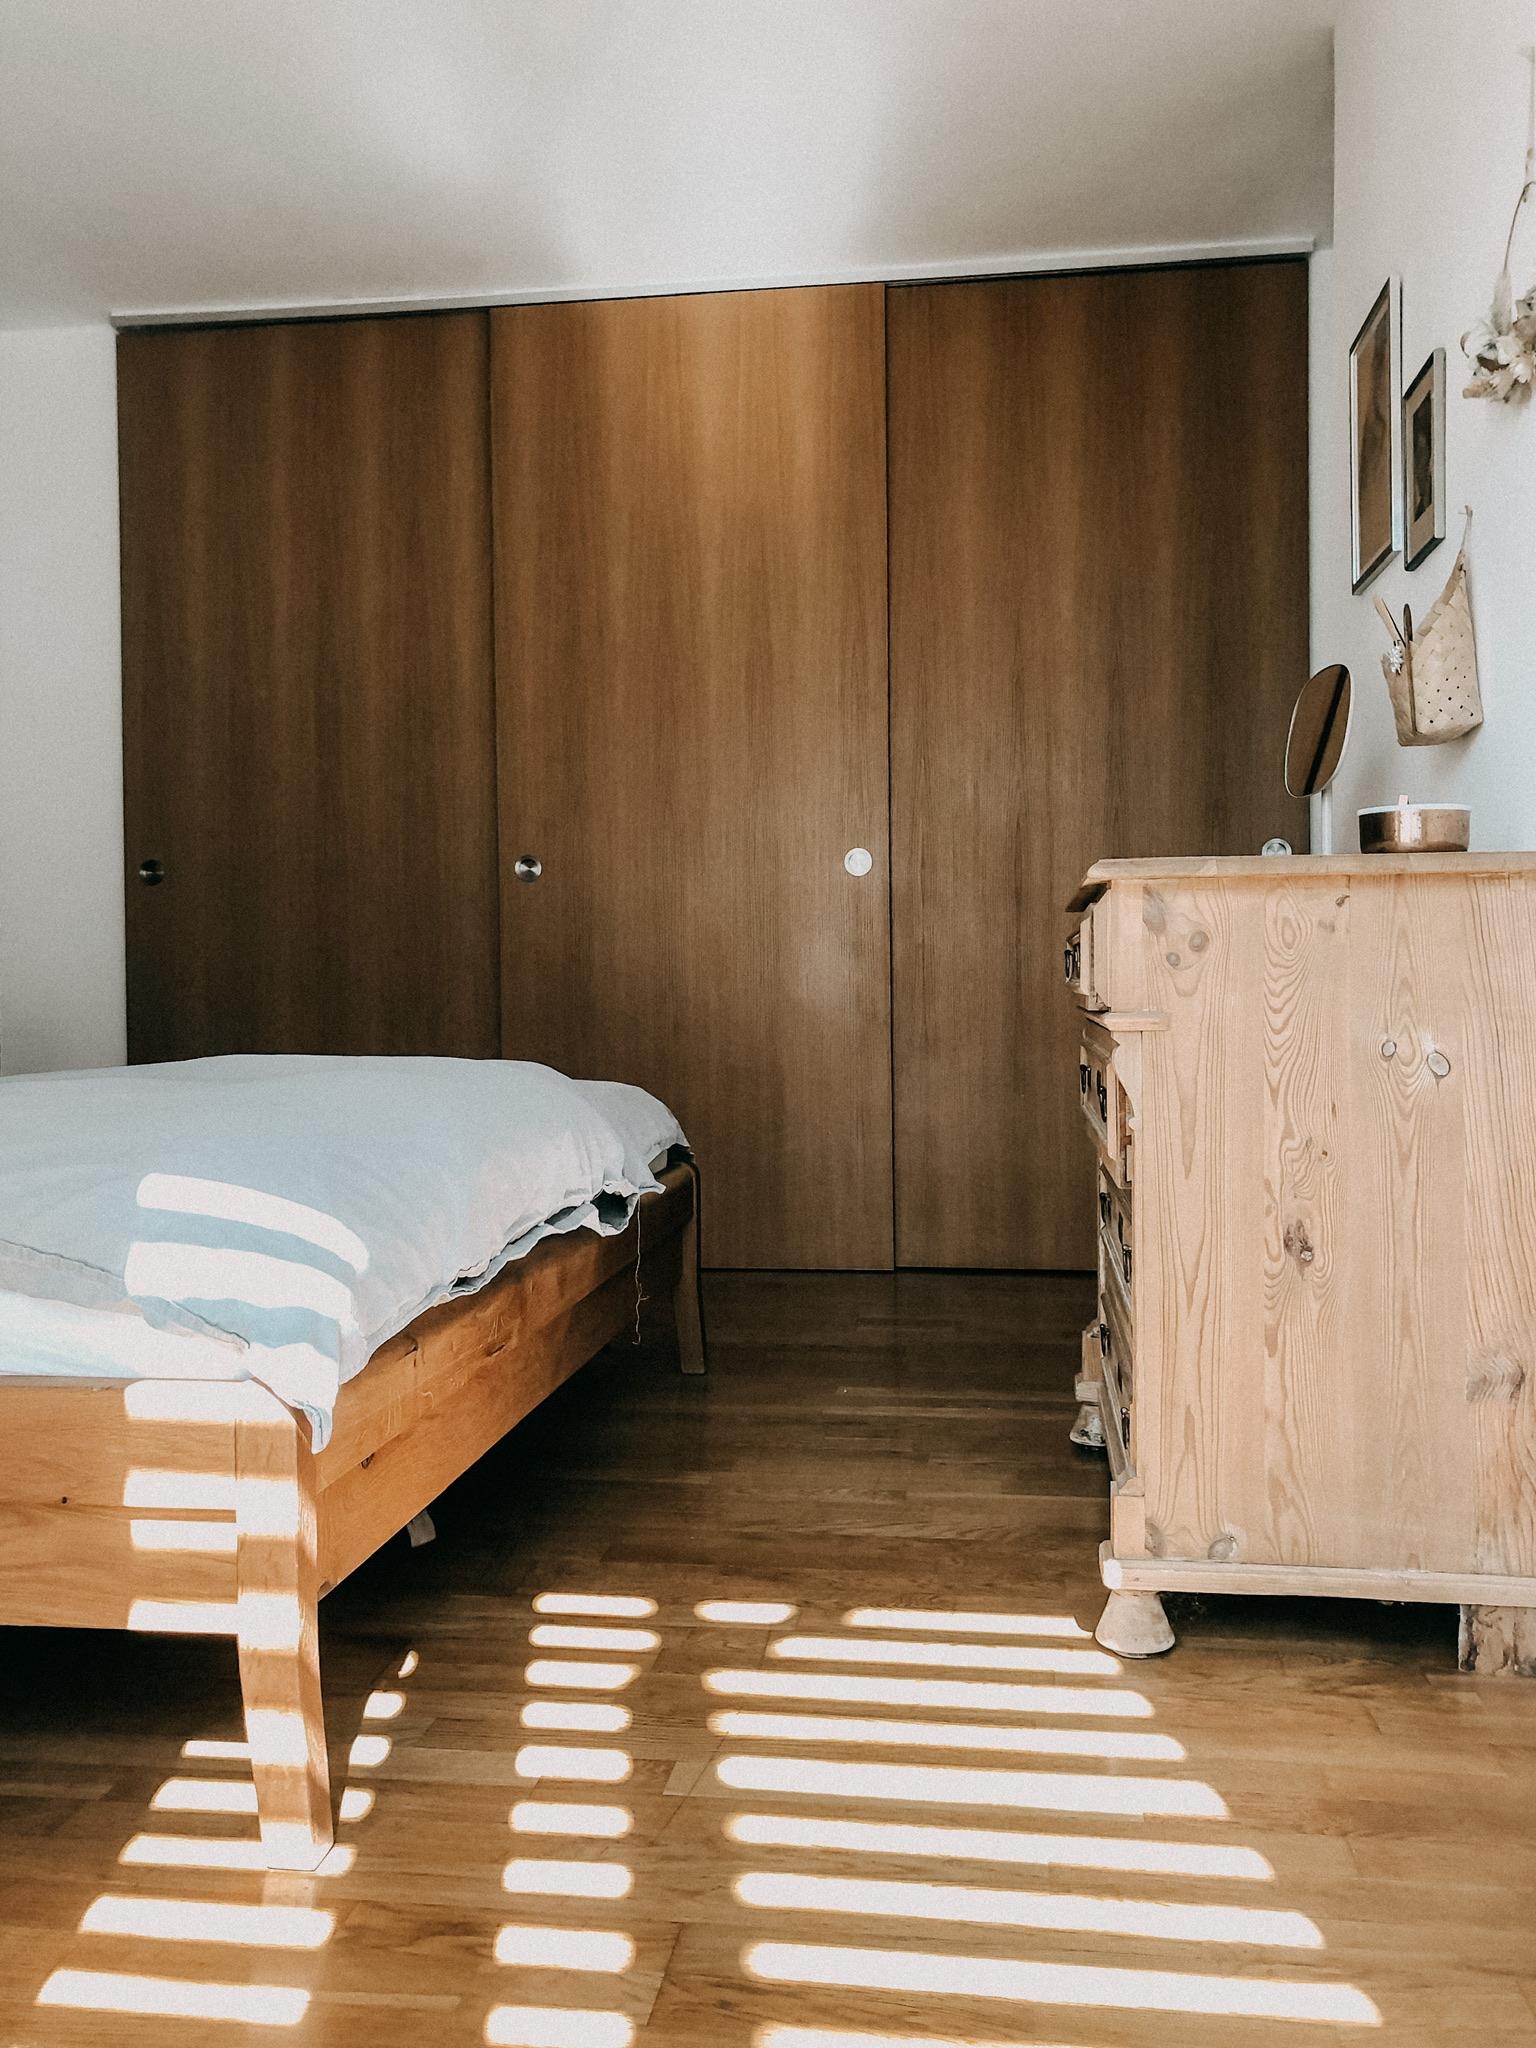 Schlafzimmer 
#schlafzimmer #bedroom #kleiderschrank #holzschiebetür #eichenholz #sunlight #sonnenstrahlen